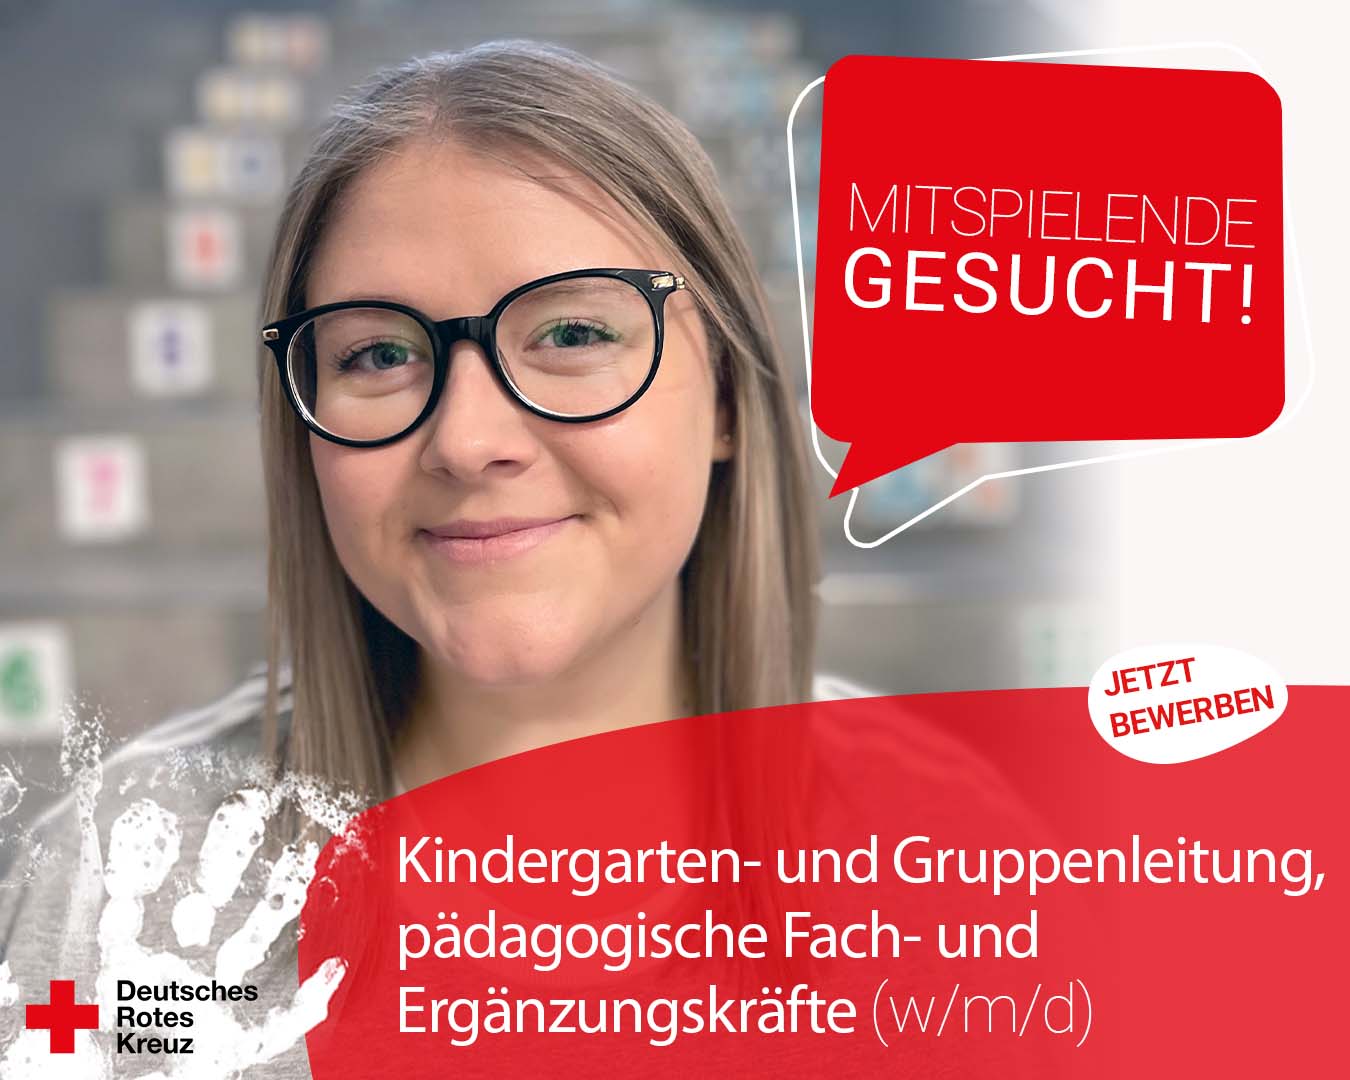 Kindergarten- und Gruppenleitung, pädagogische Fach- und Ergänzungskräfte | DRK Kindertagesstätte im Kreis Heinsberg gGmbH